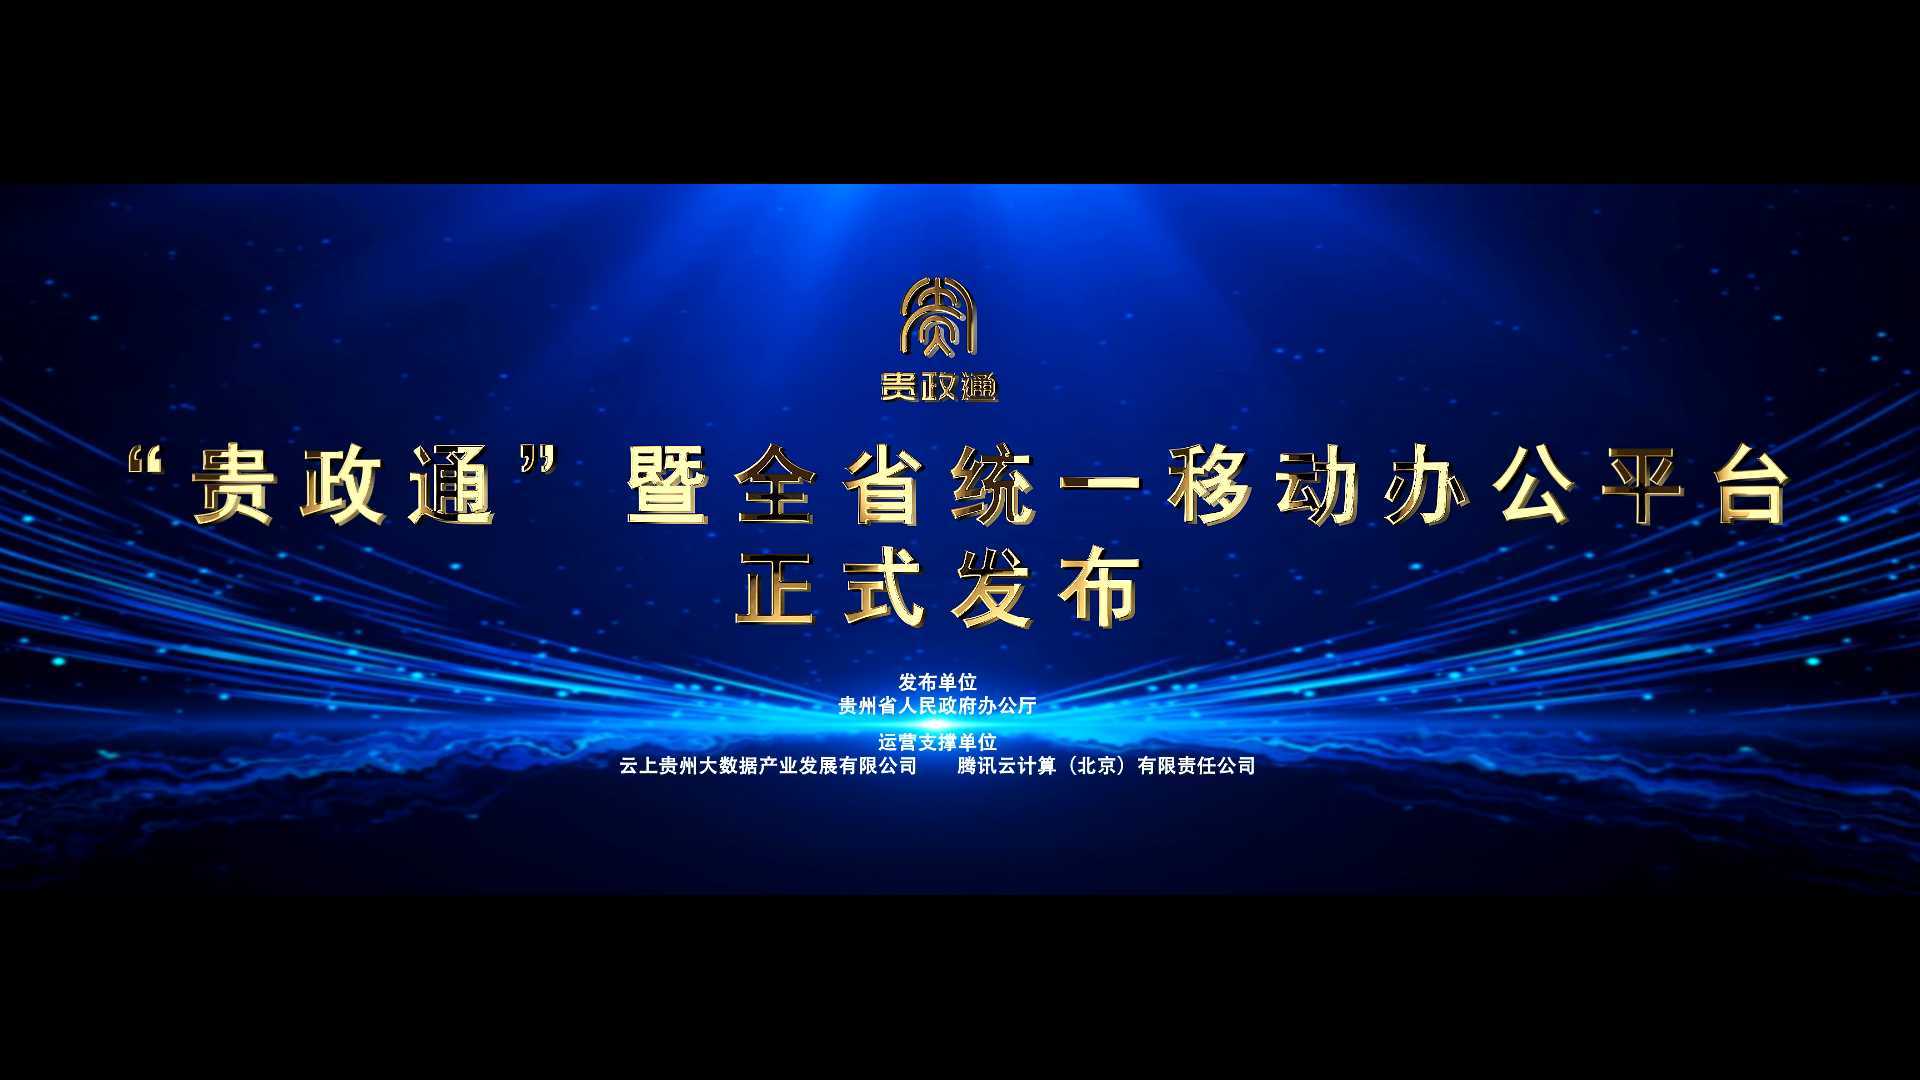 《“贵政通”启动仪式背景视频》